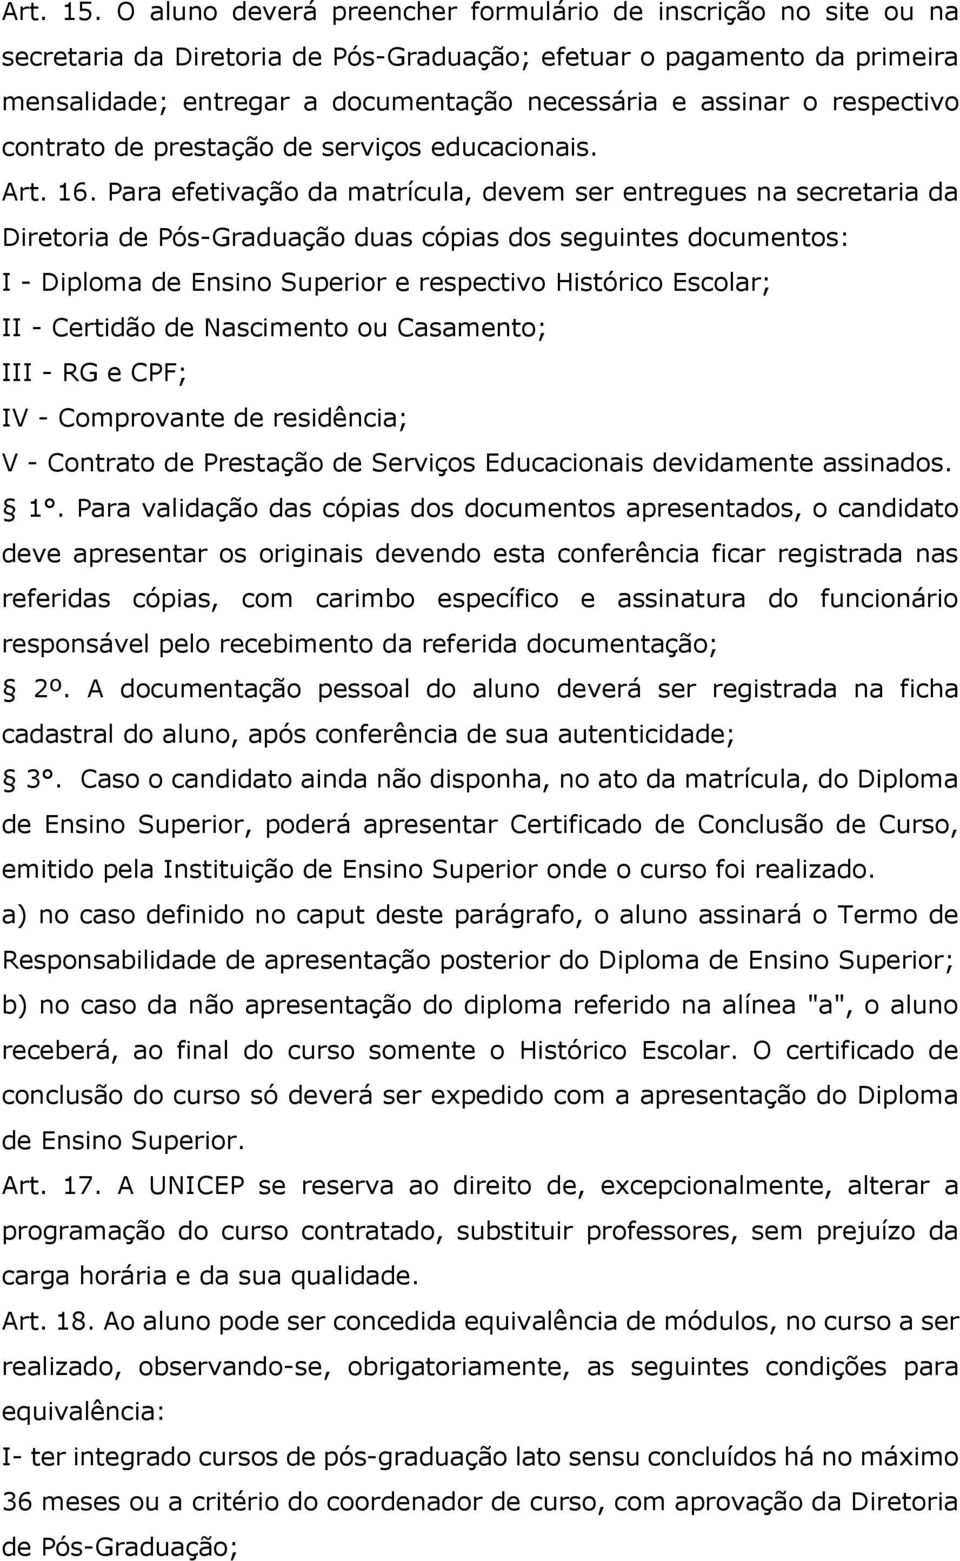 respectivo contrato de prestação de serviços educacionais. Art. 16.